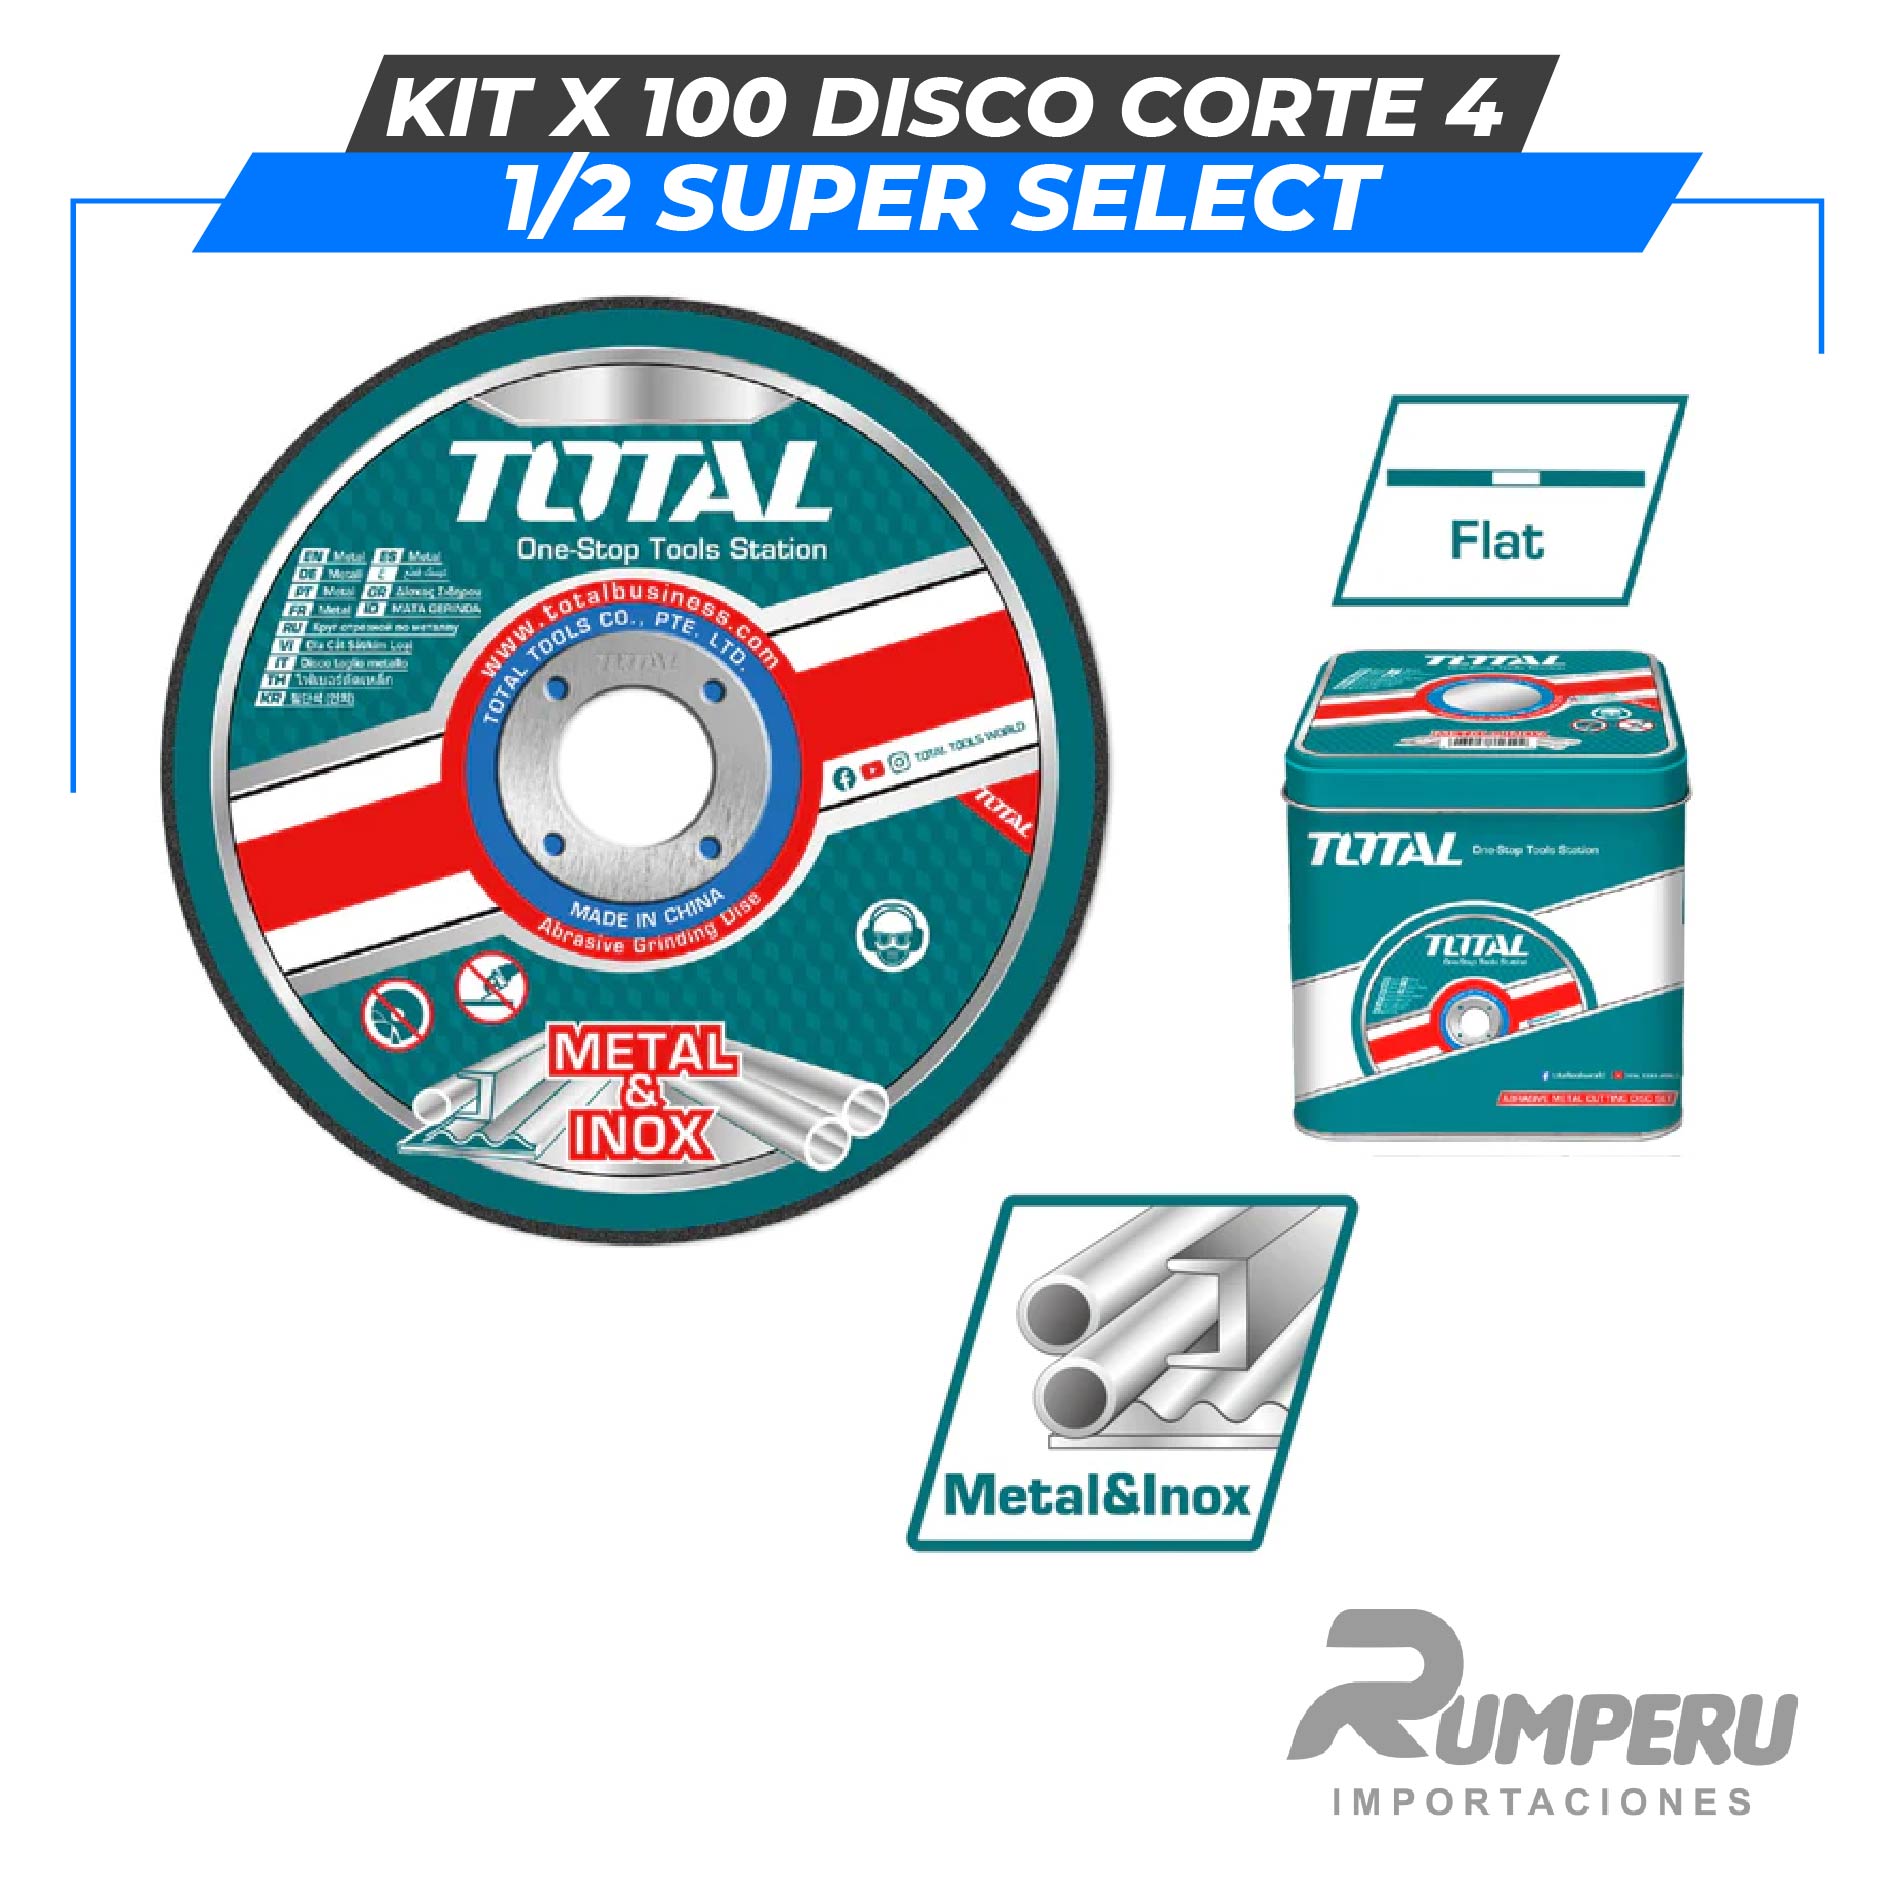 Kit x 100 Disco corte 4 1/2" SUPER SELECTSet de accesorios 120 pcs TOTAL